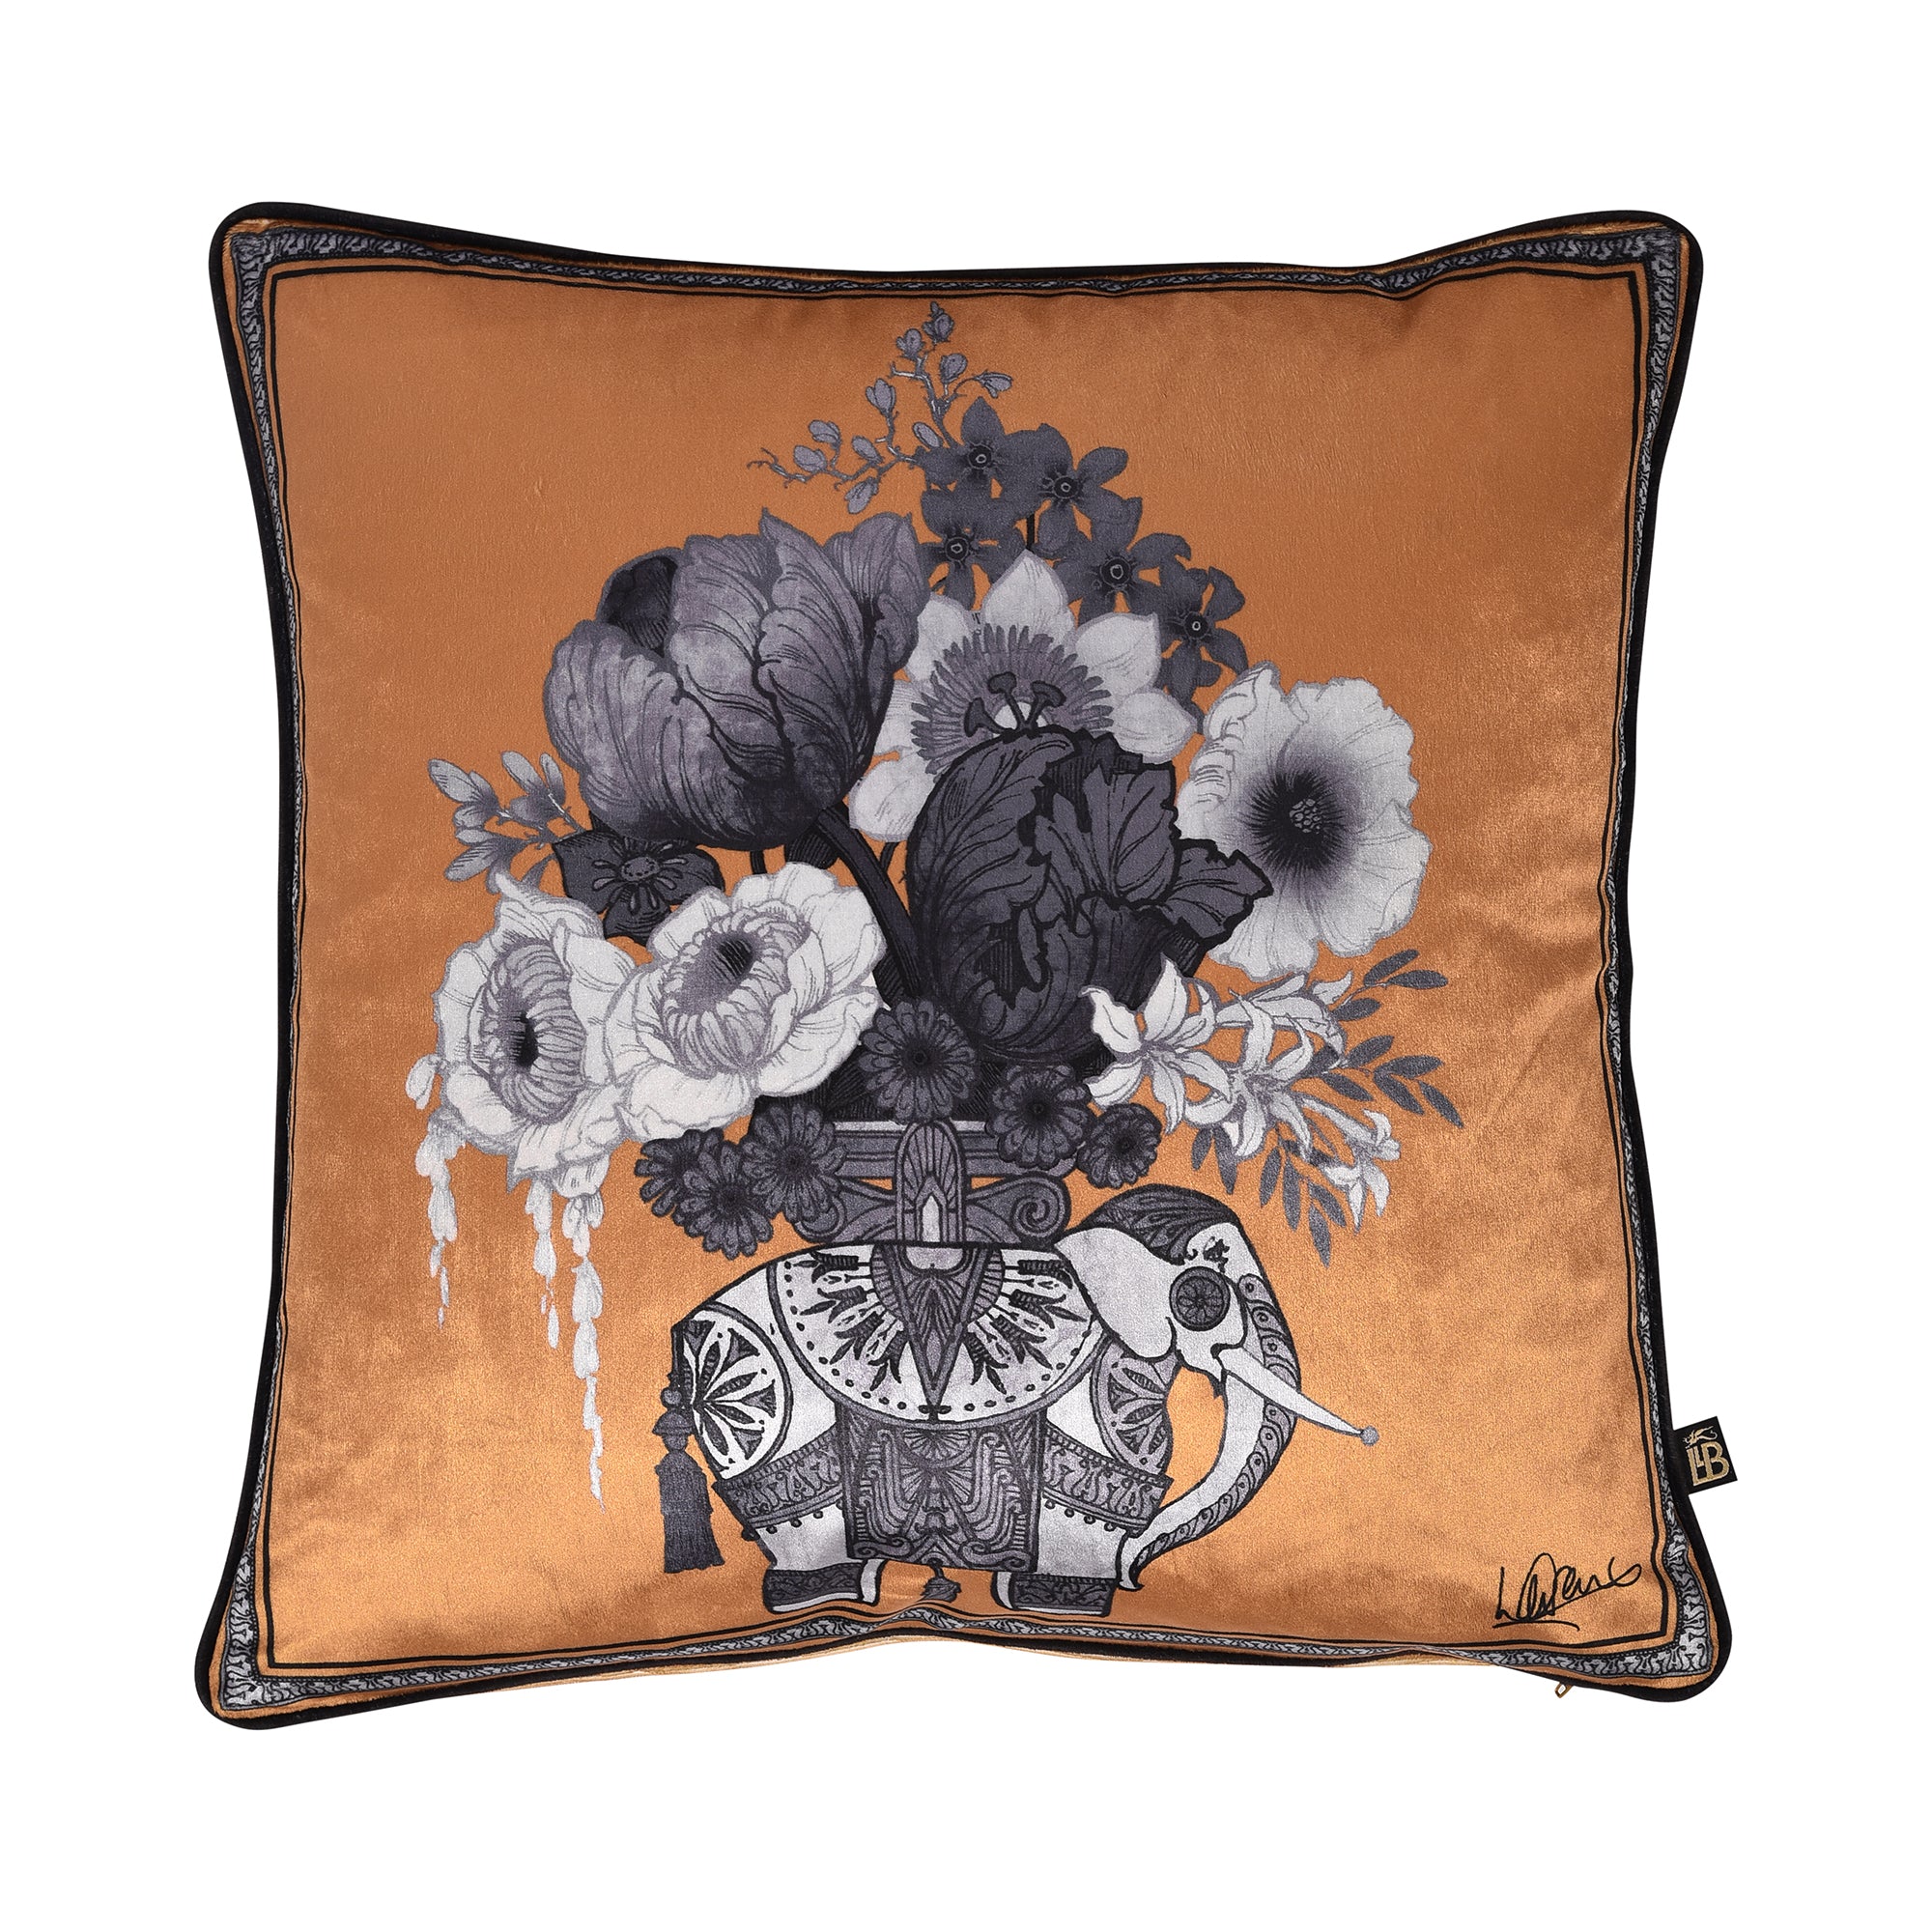 Generou Elephant Cushion by Laurence Llewelyn-Bowen in Gold 43 x 43cm - Cushion - Laurence Llewelyn-Bowen